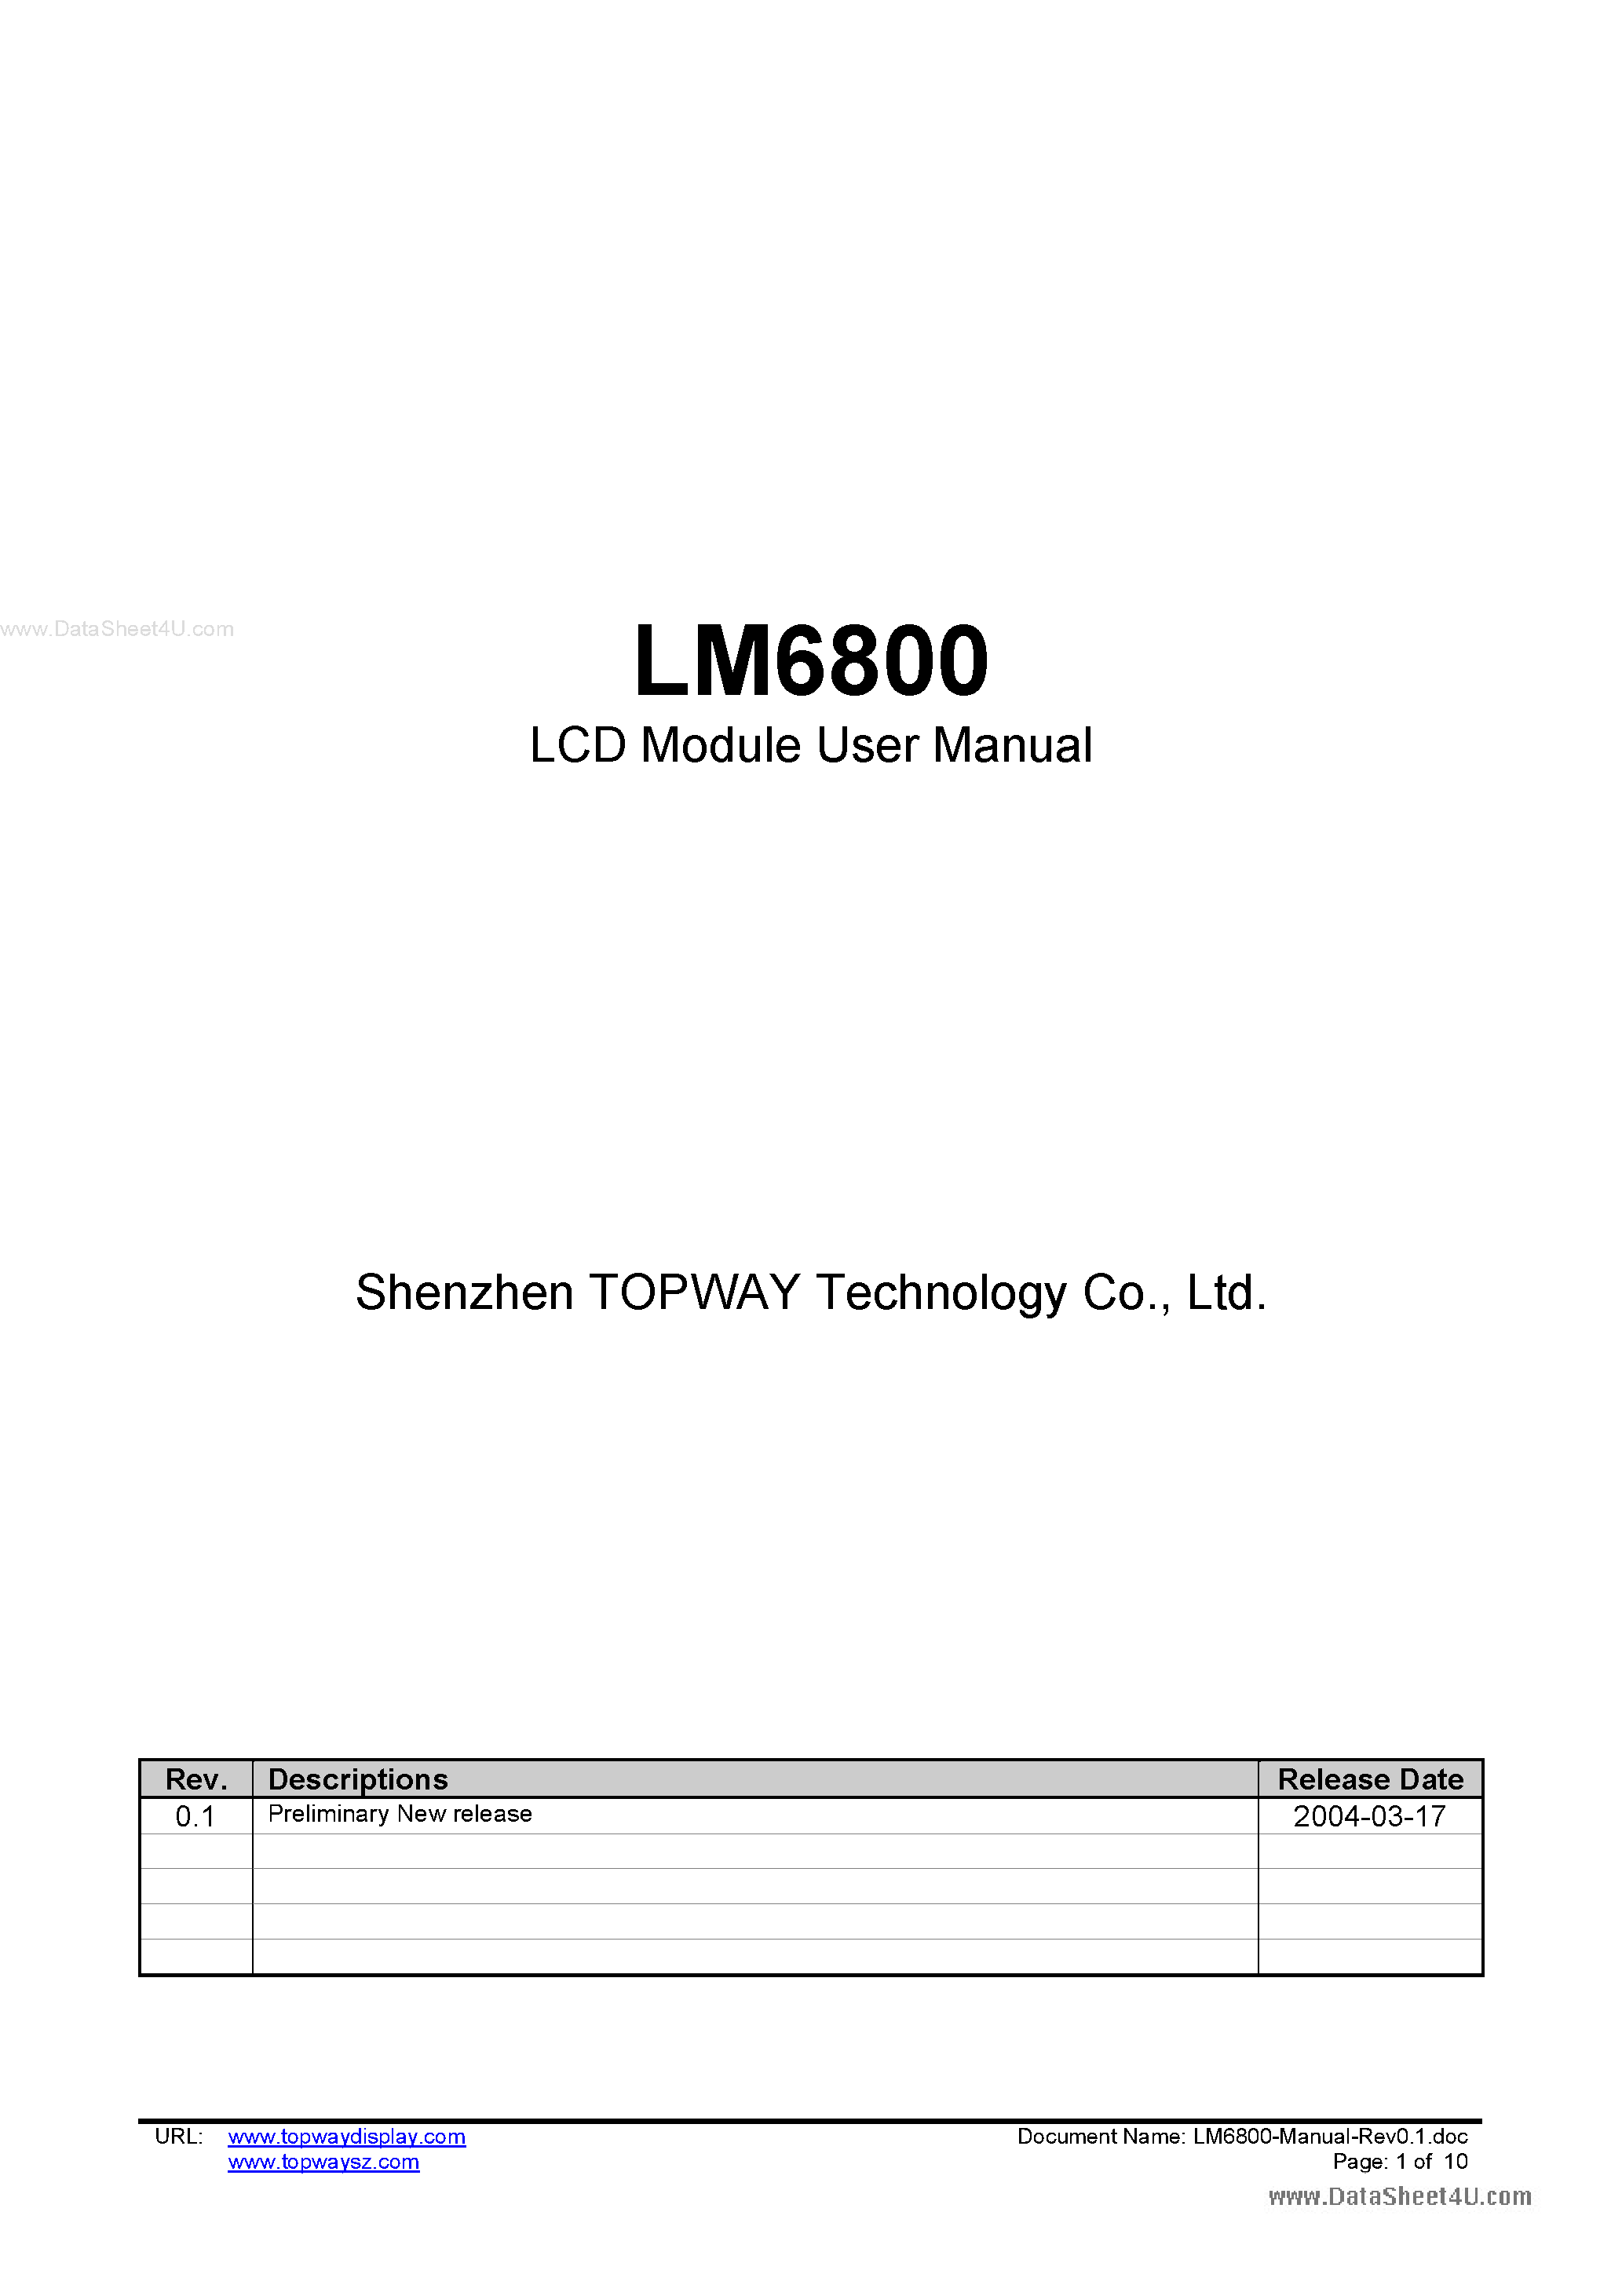 Даташит LM6800 - LCD Module страница 1